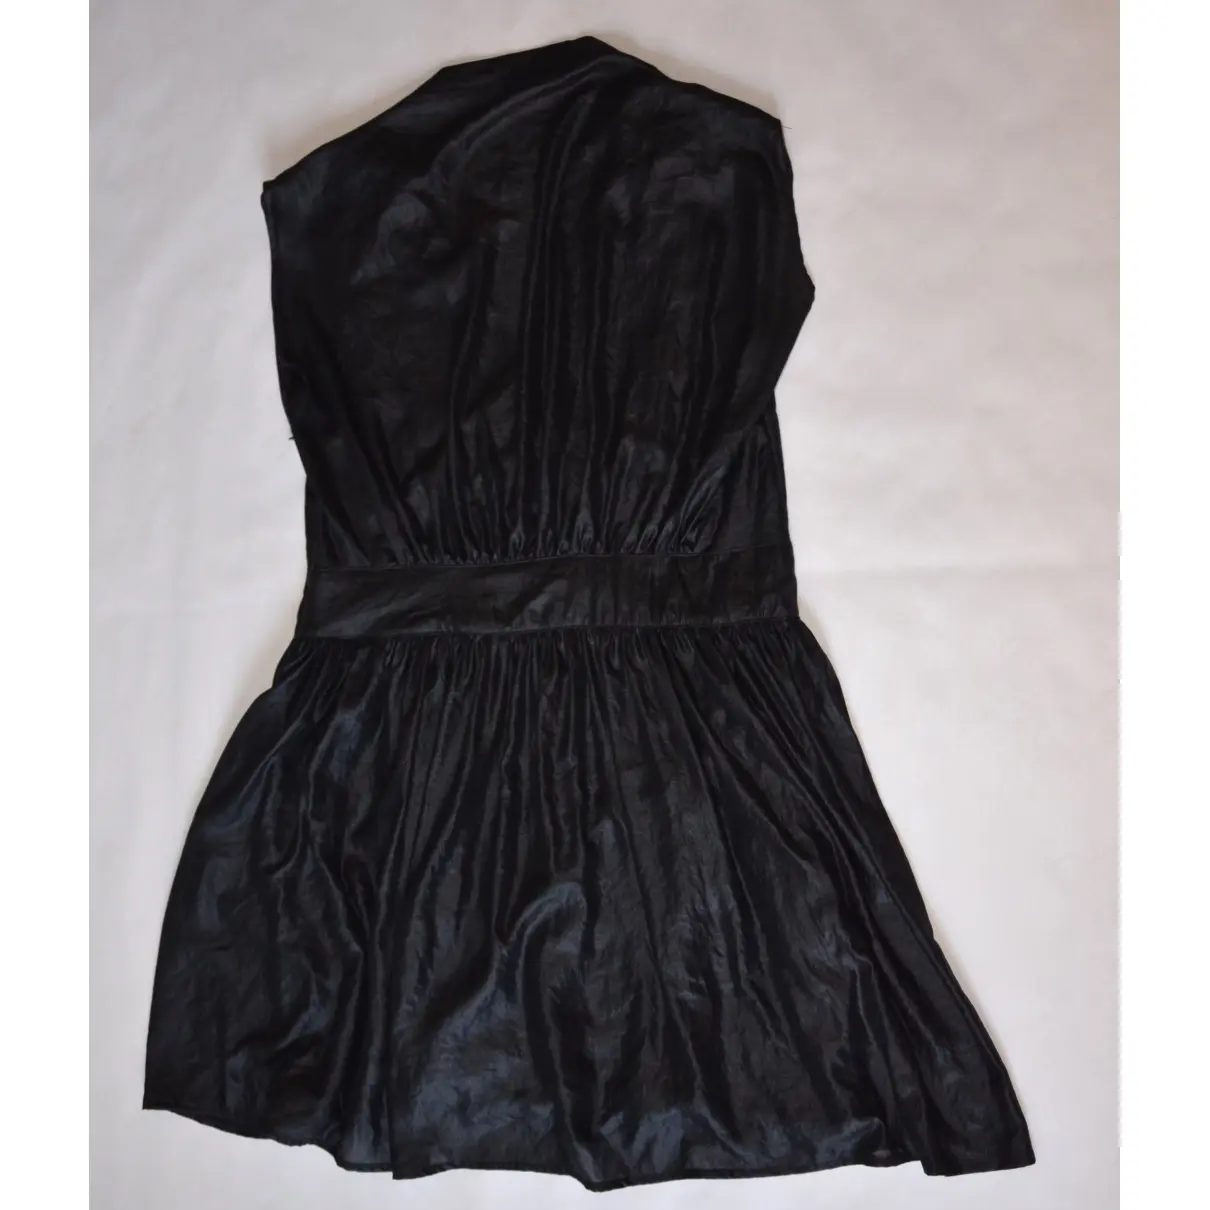 SITA MURT Mini dress for sale